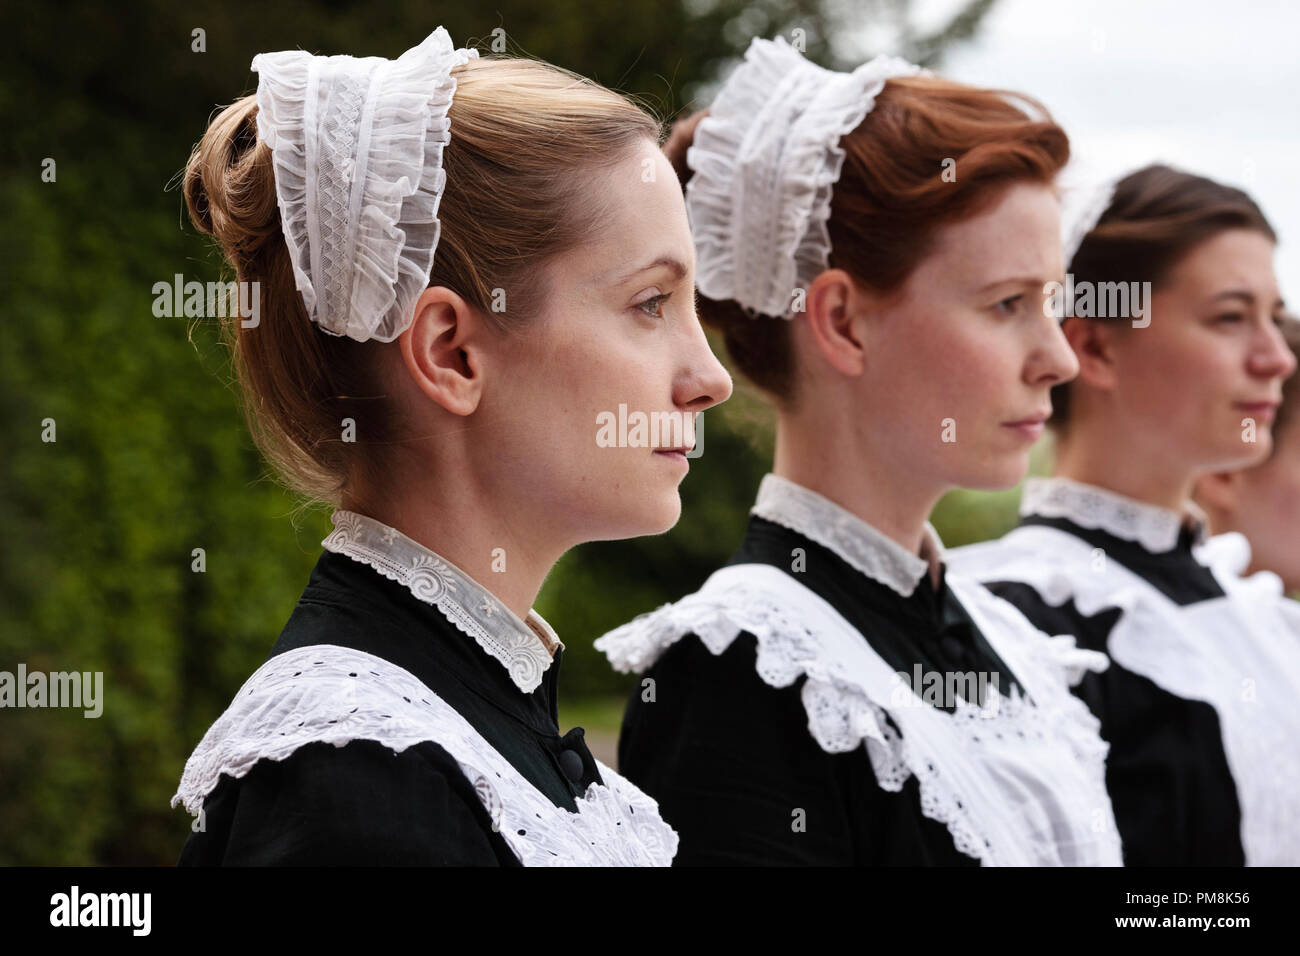 Cavendish Abbey stagione 2 - Episodio 2 il cameriere di Cavendish Abbey. Illustrato da L-R: Joanne Frogatt come Anna Smith e Amy Nuttall come Ethel Foto Stock